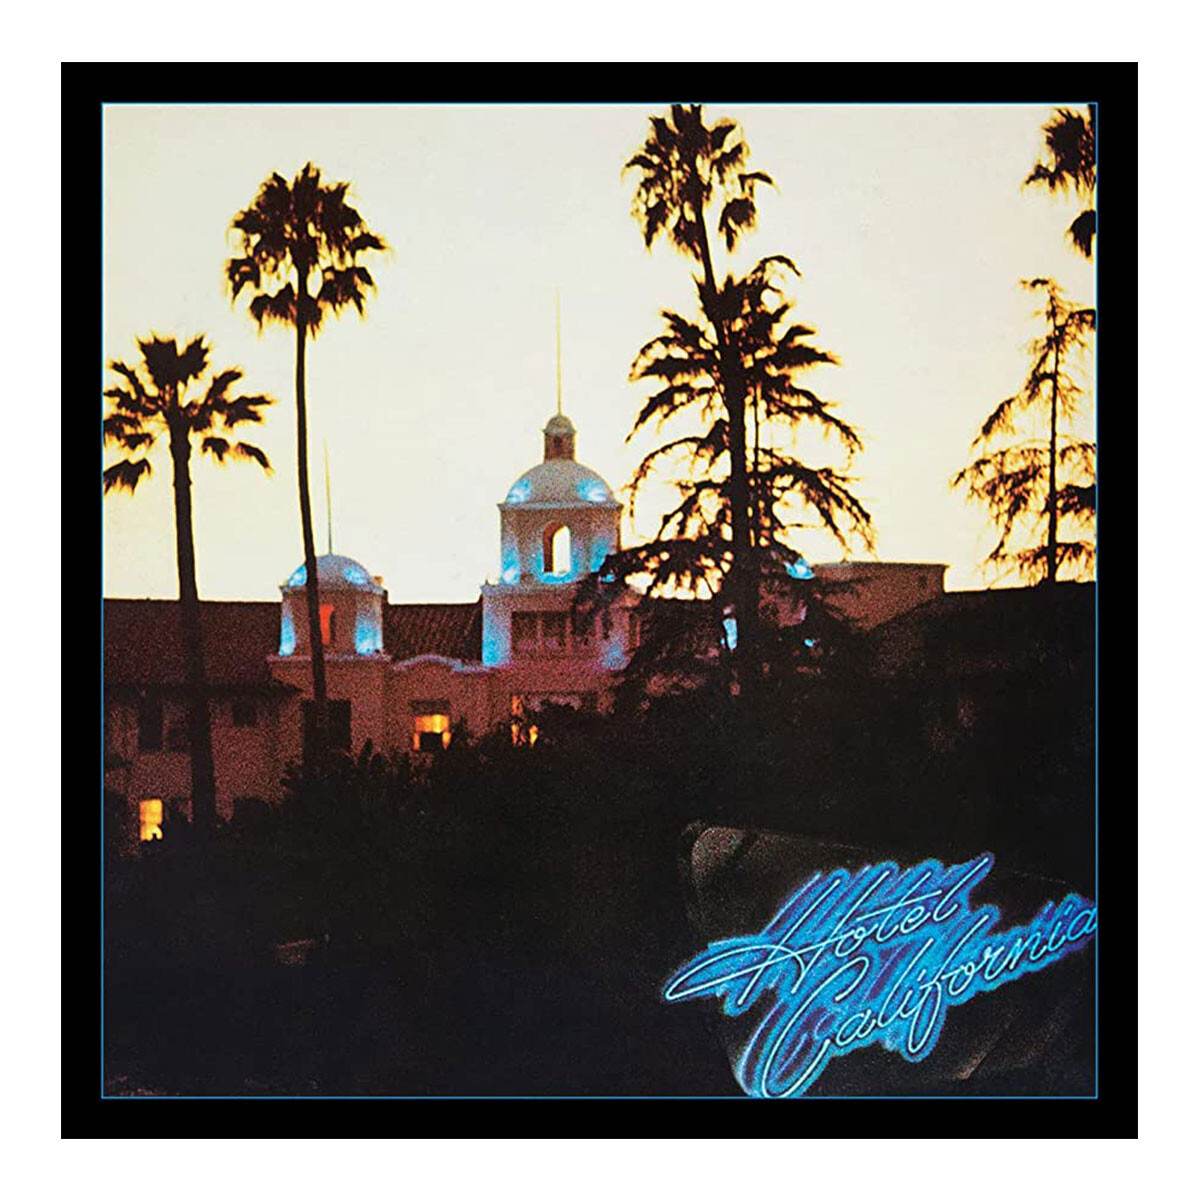 Eagles Hotel California - - Vinilo 